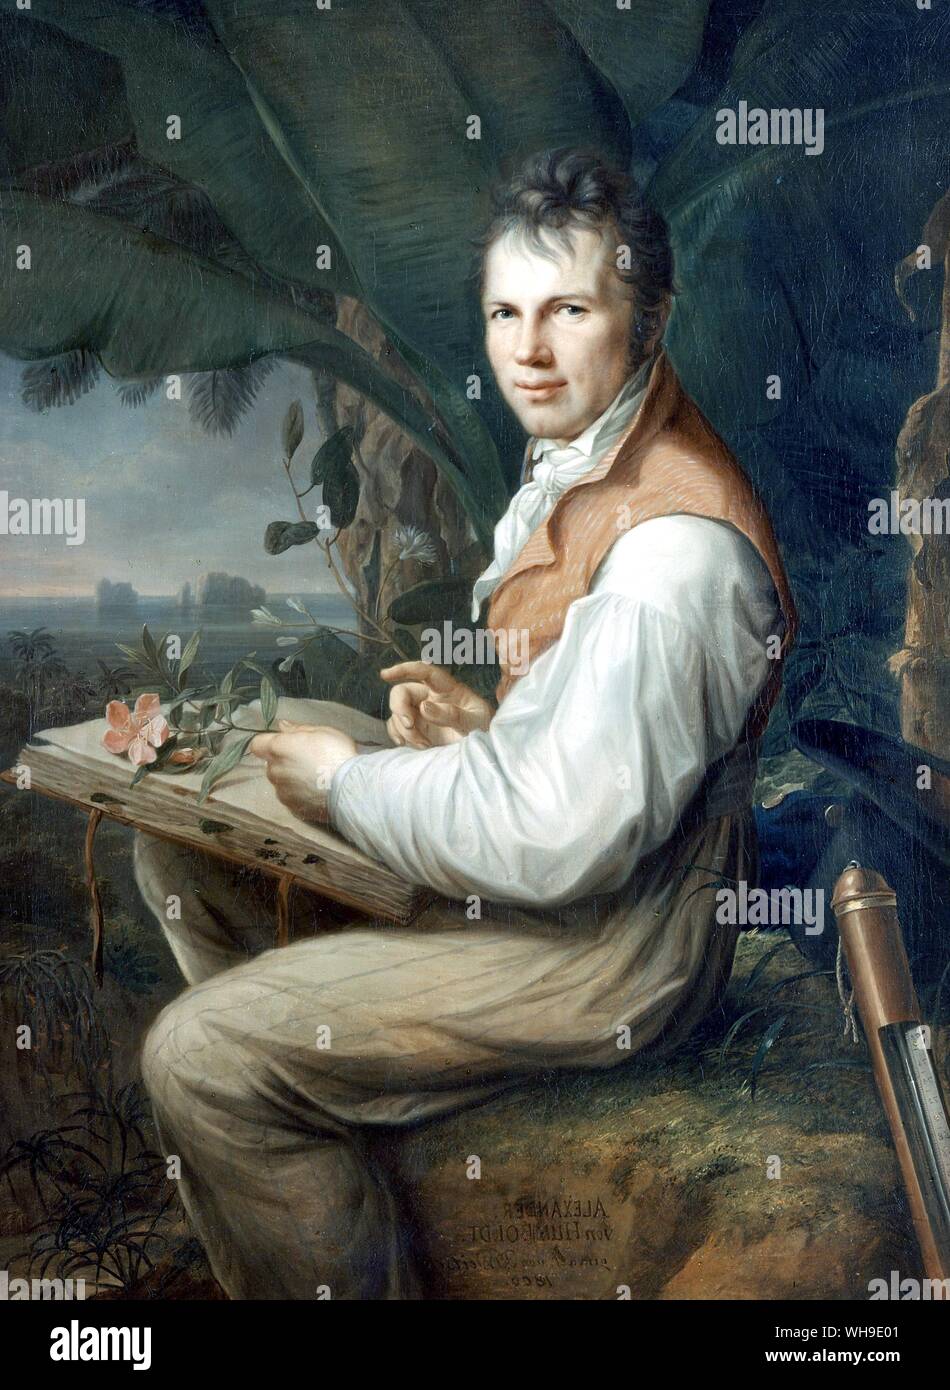 Humboldt en Venezuela, appuyez sur la plante sur son tour, top hat et le baromètre derrière lui. Peinture de F. G. Weitsch. Banque D'Images